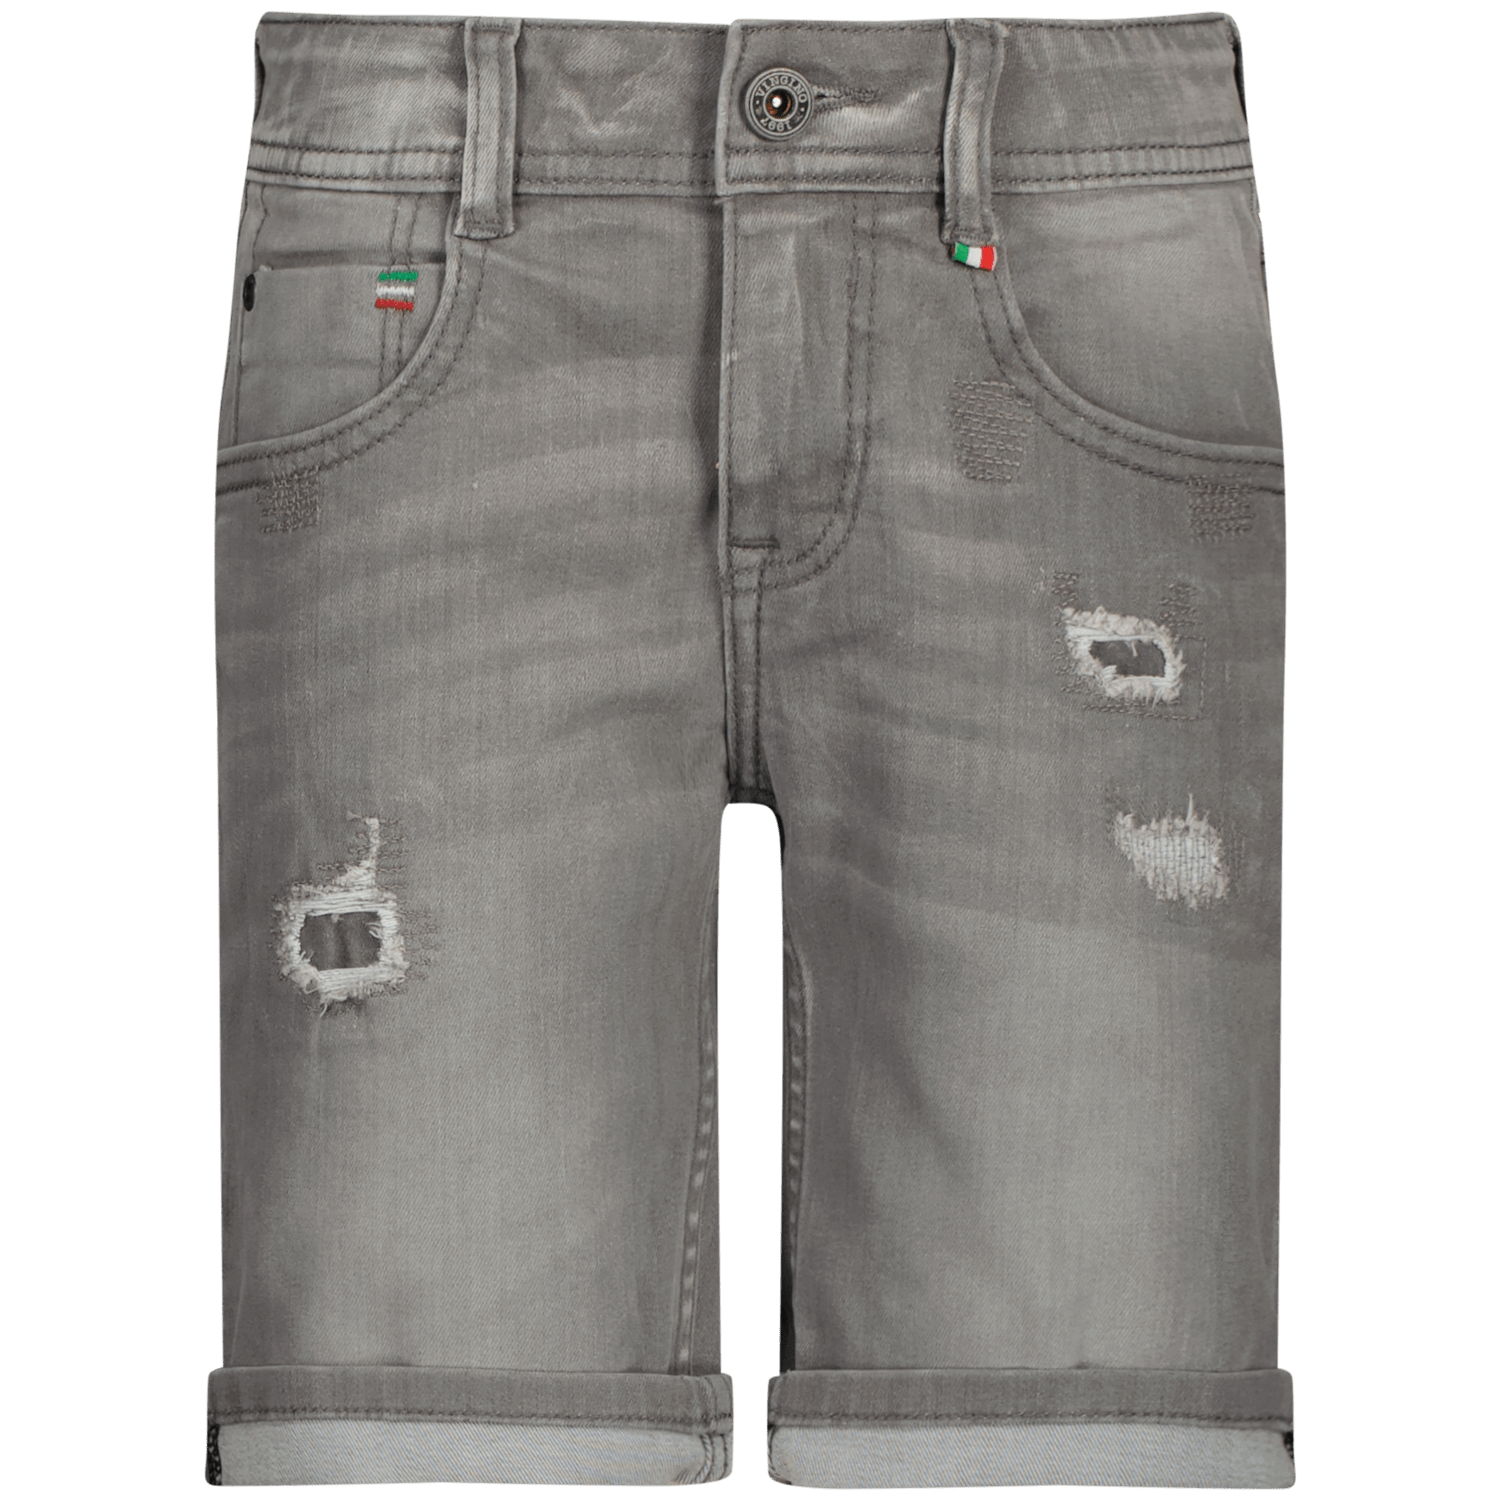 VINGINO Jeans Curzio damage